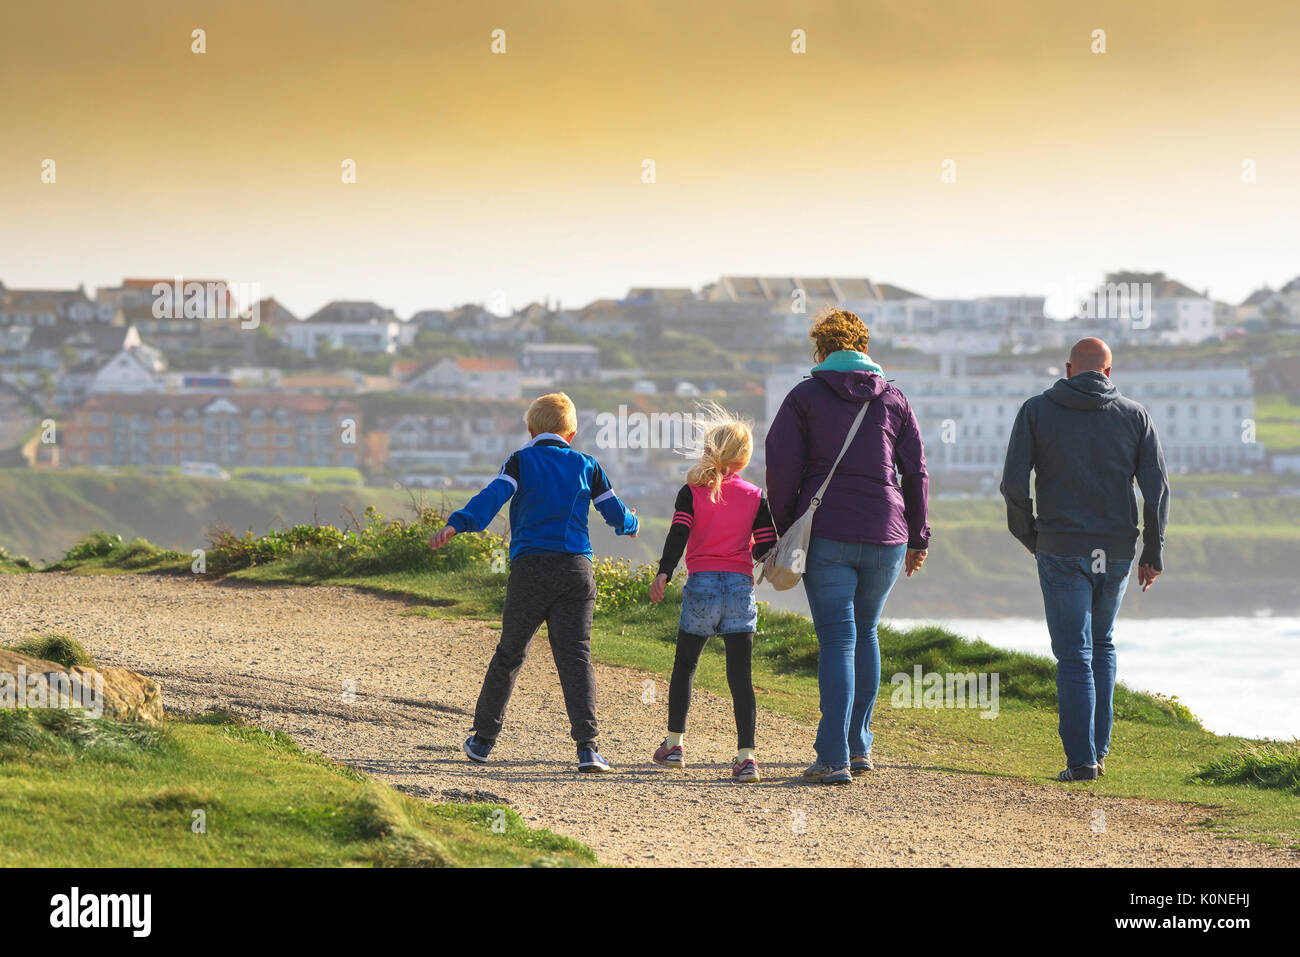 Una familia de turistas disfrutando de una vigorizante caminata en condiciones de viento. Foto de stock